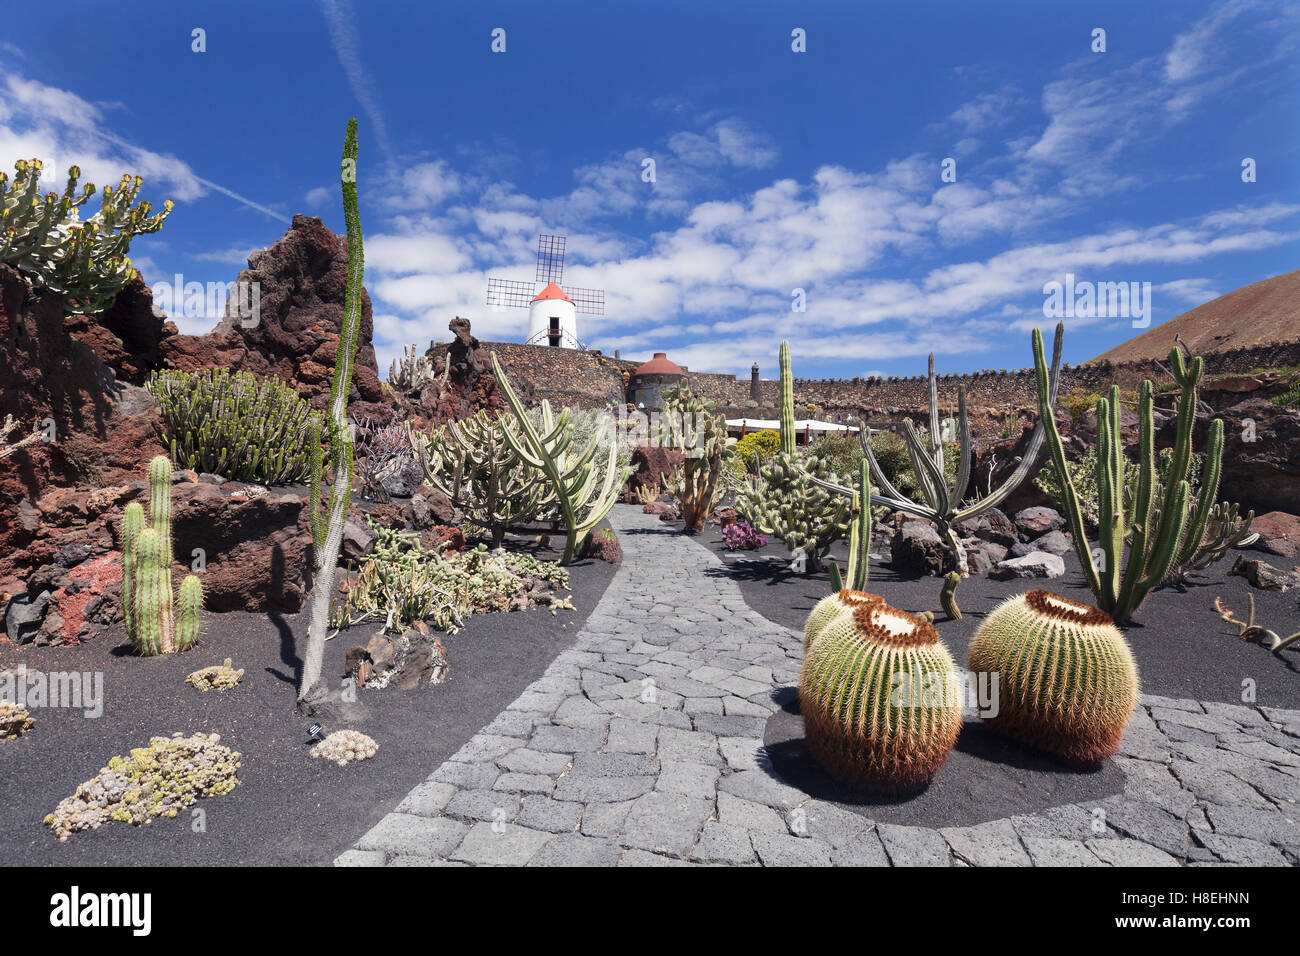 Jardín de Cactus por César Manrique, molino de viento, Reserva de la Biosfera de la UNESCO, Guatiza, Lanzarote, Islas Canarias, España Foto de stock